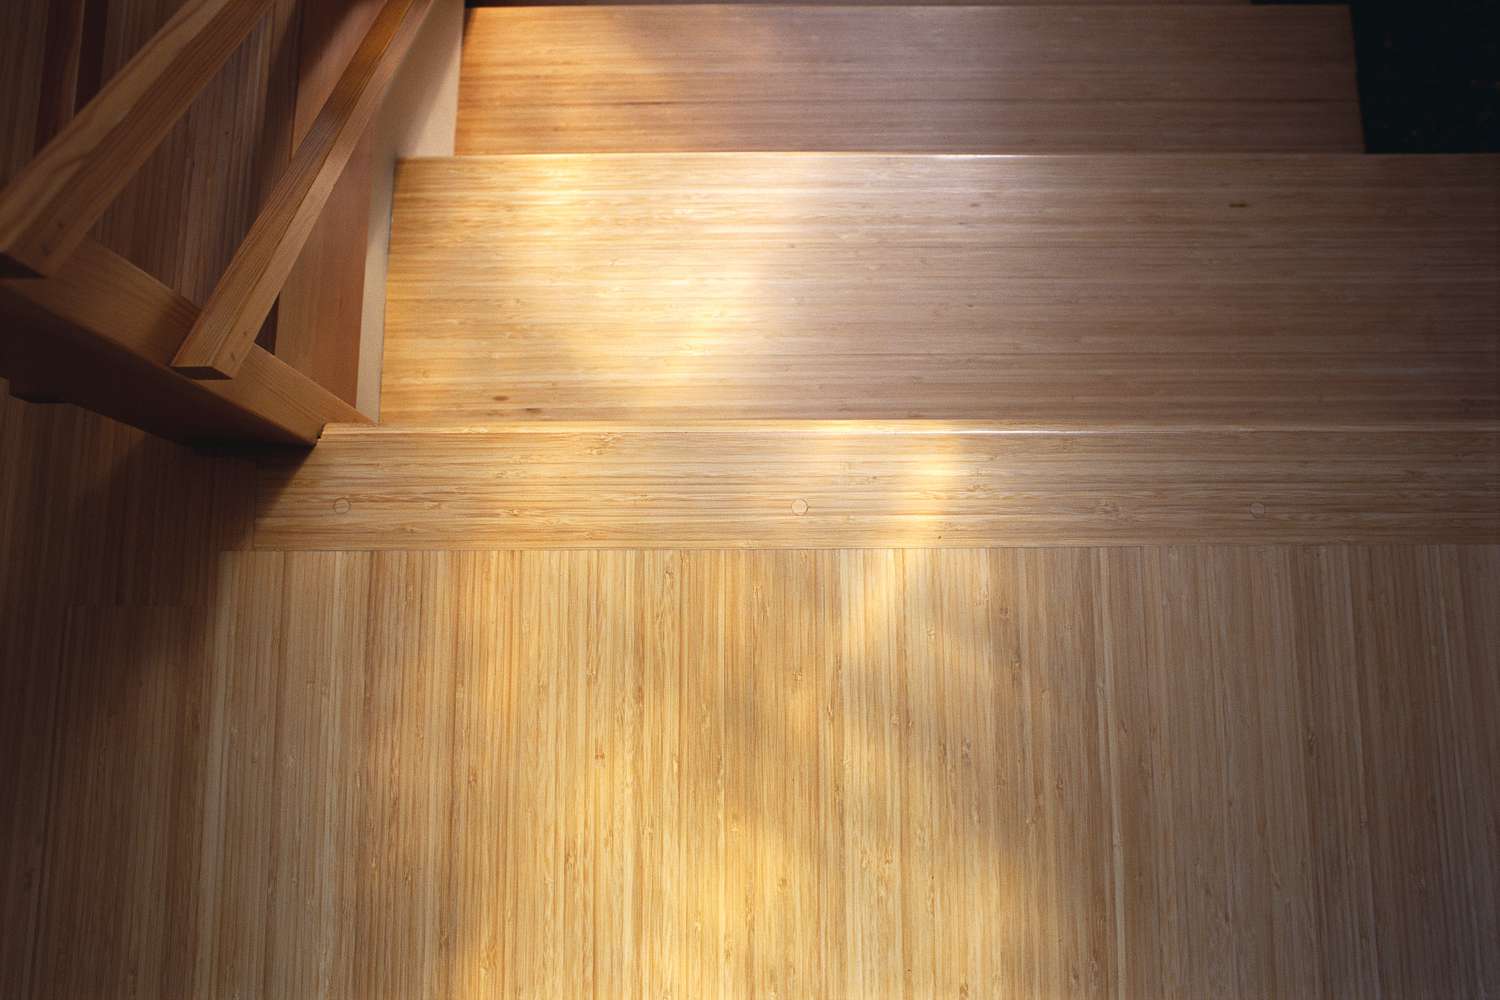 Bambusboden auf der Treppe in warmem Licht